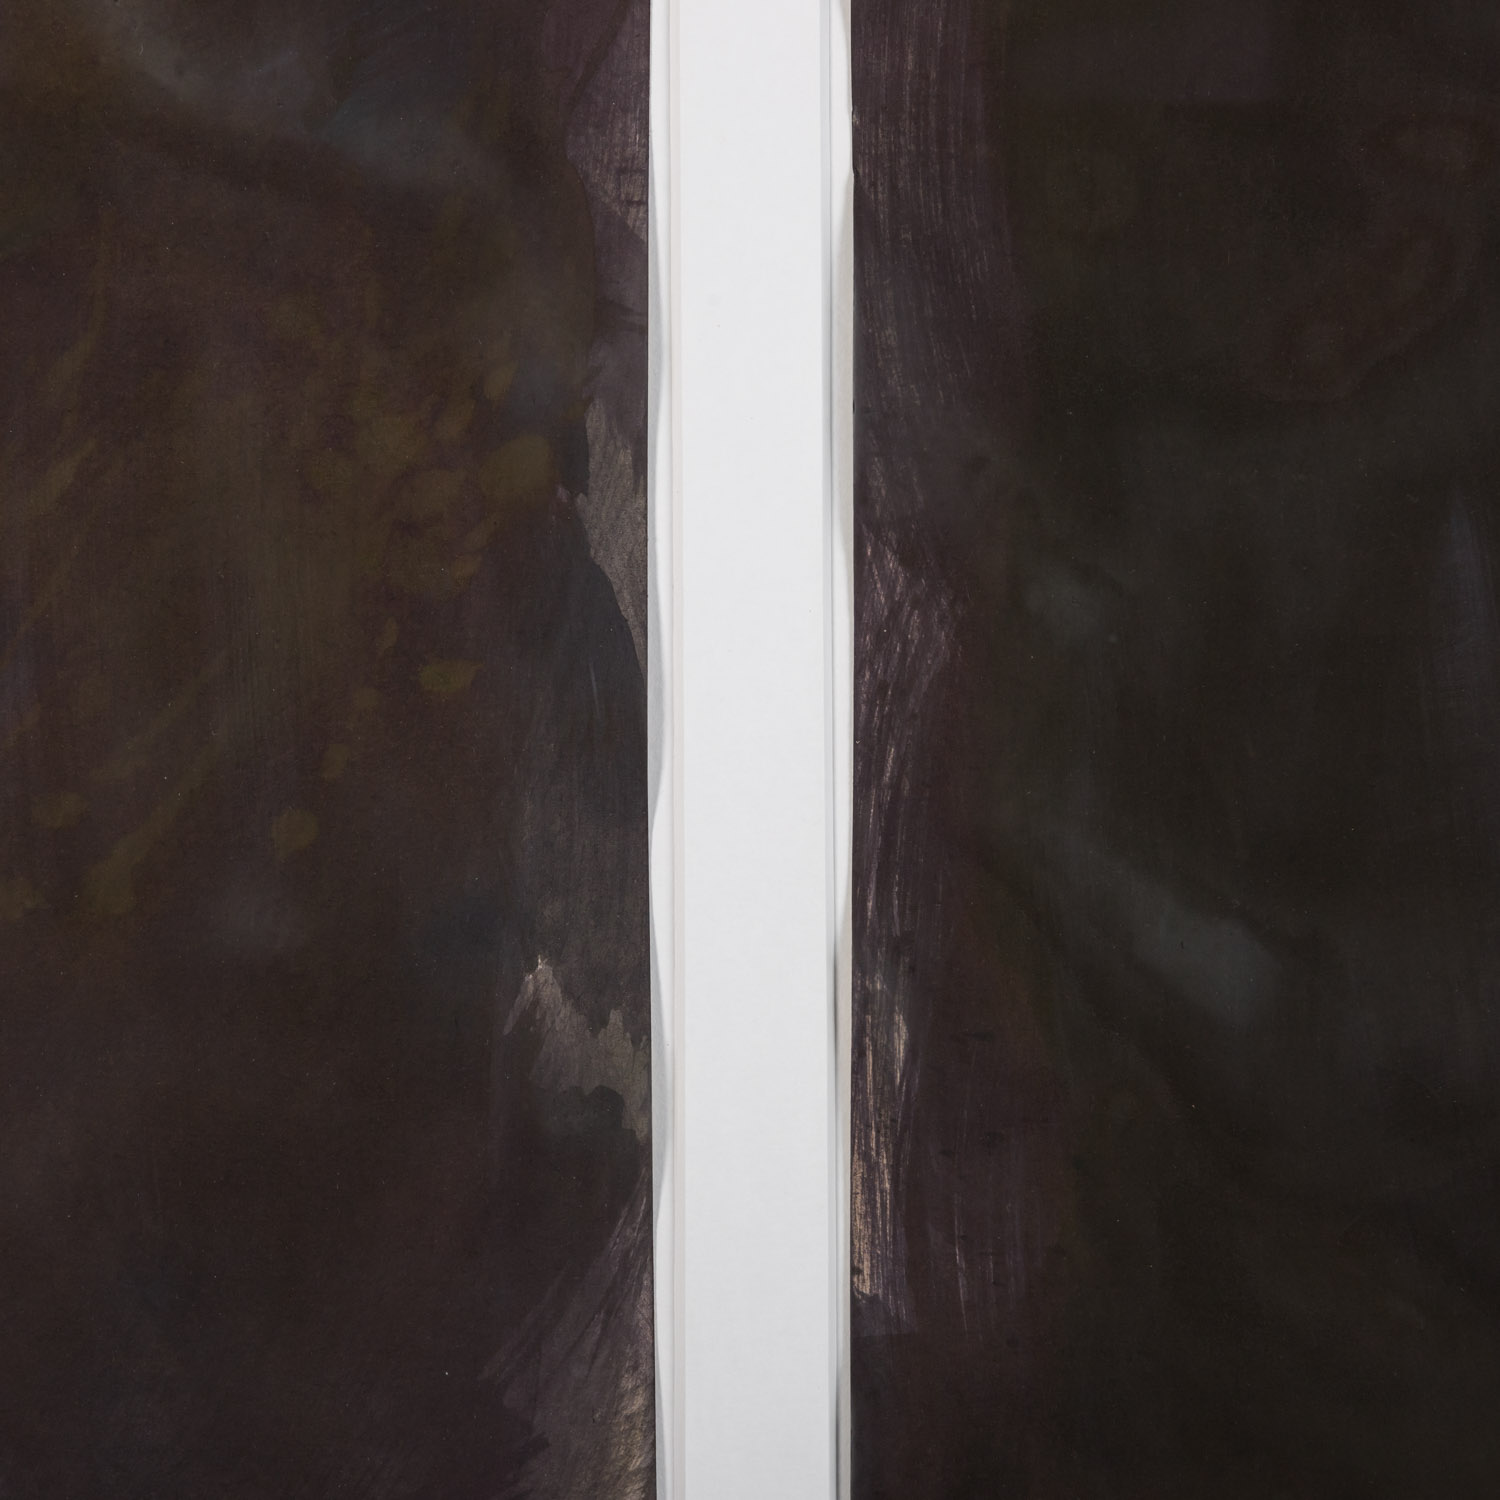 GRAUBNER, GOTTHARD (1930-2013), Diptychon "Schattenlied", 1989, - Image 2 of 5